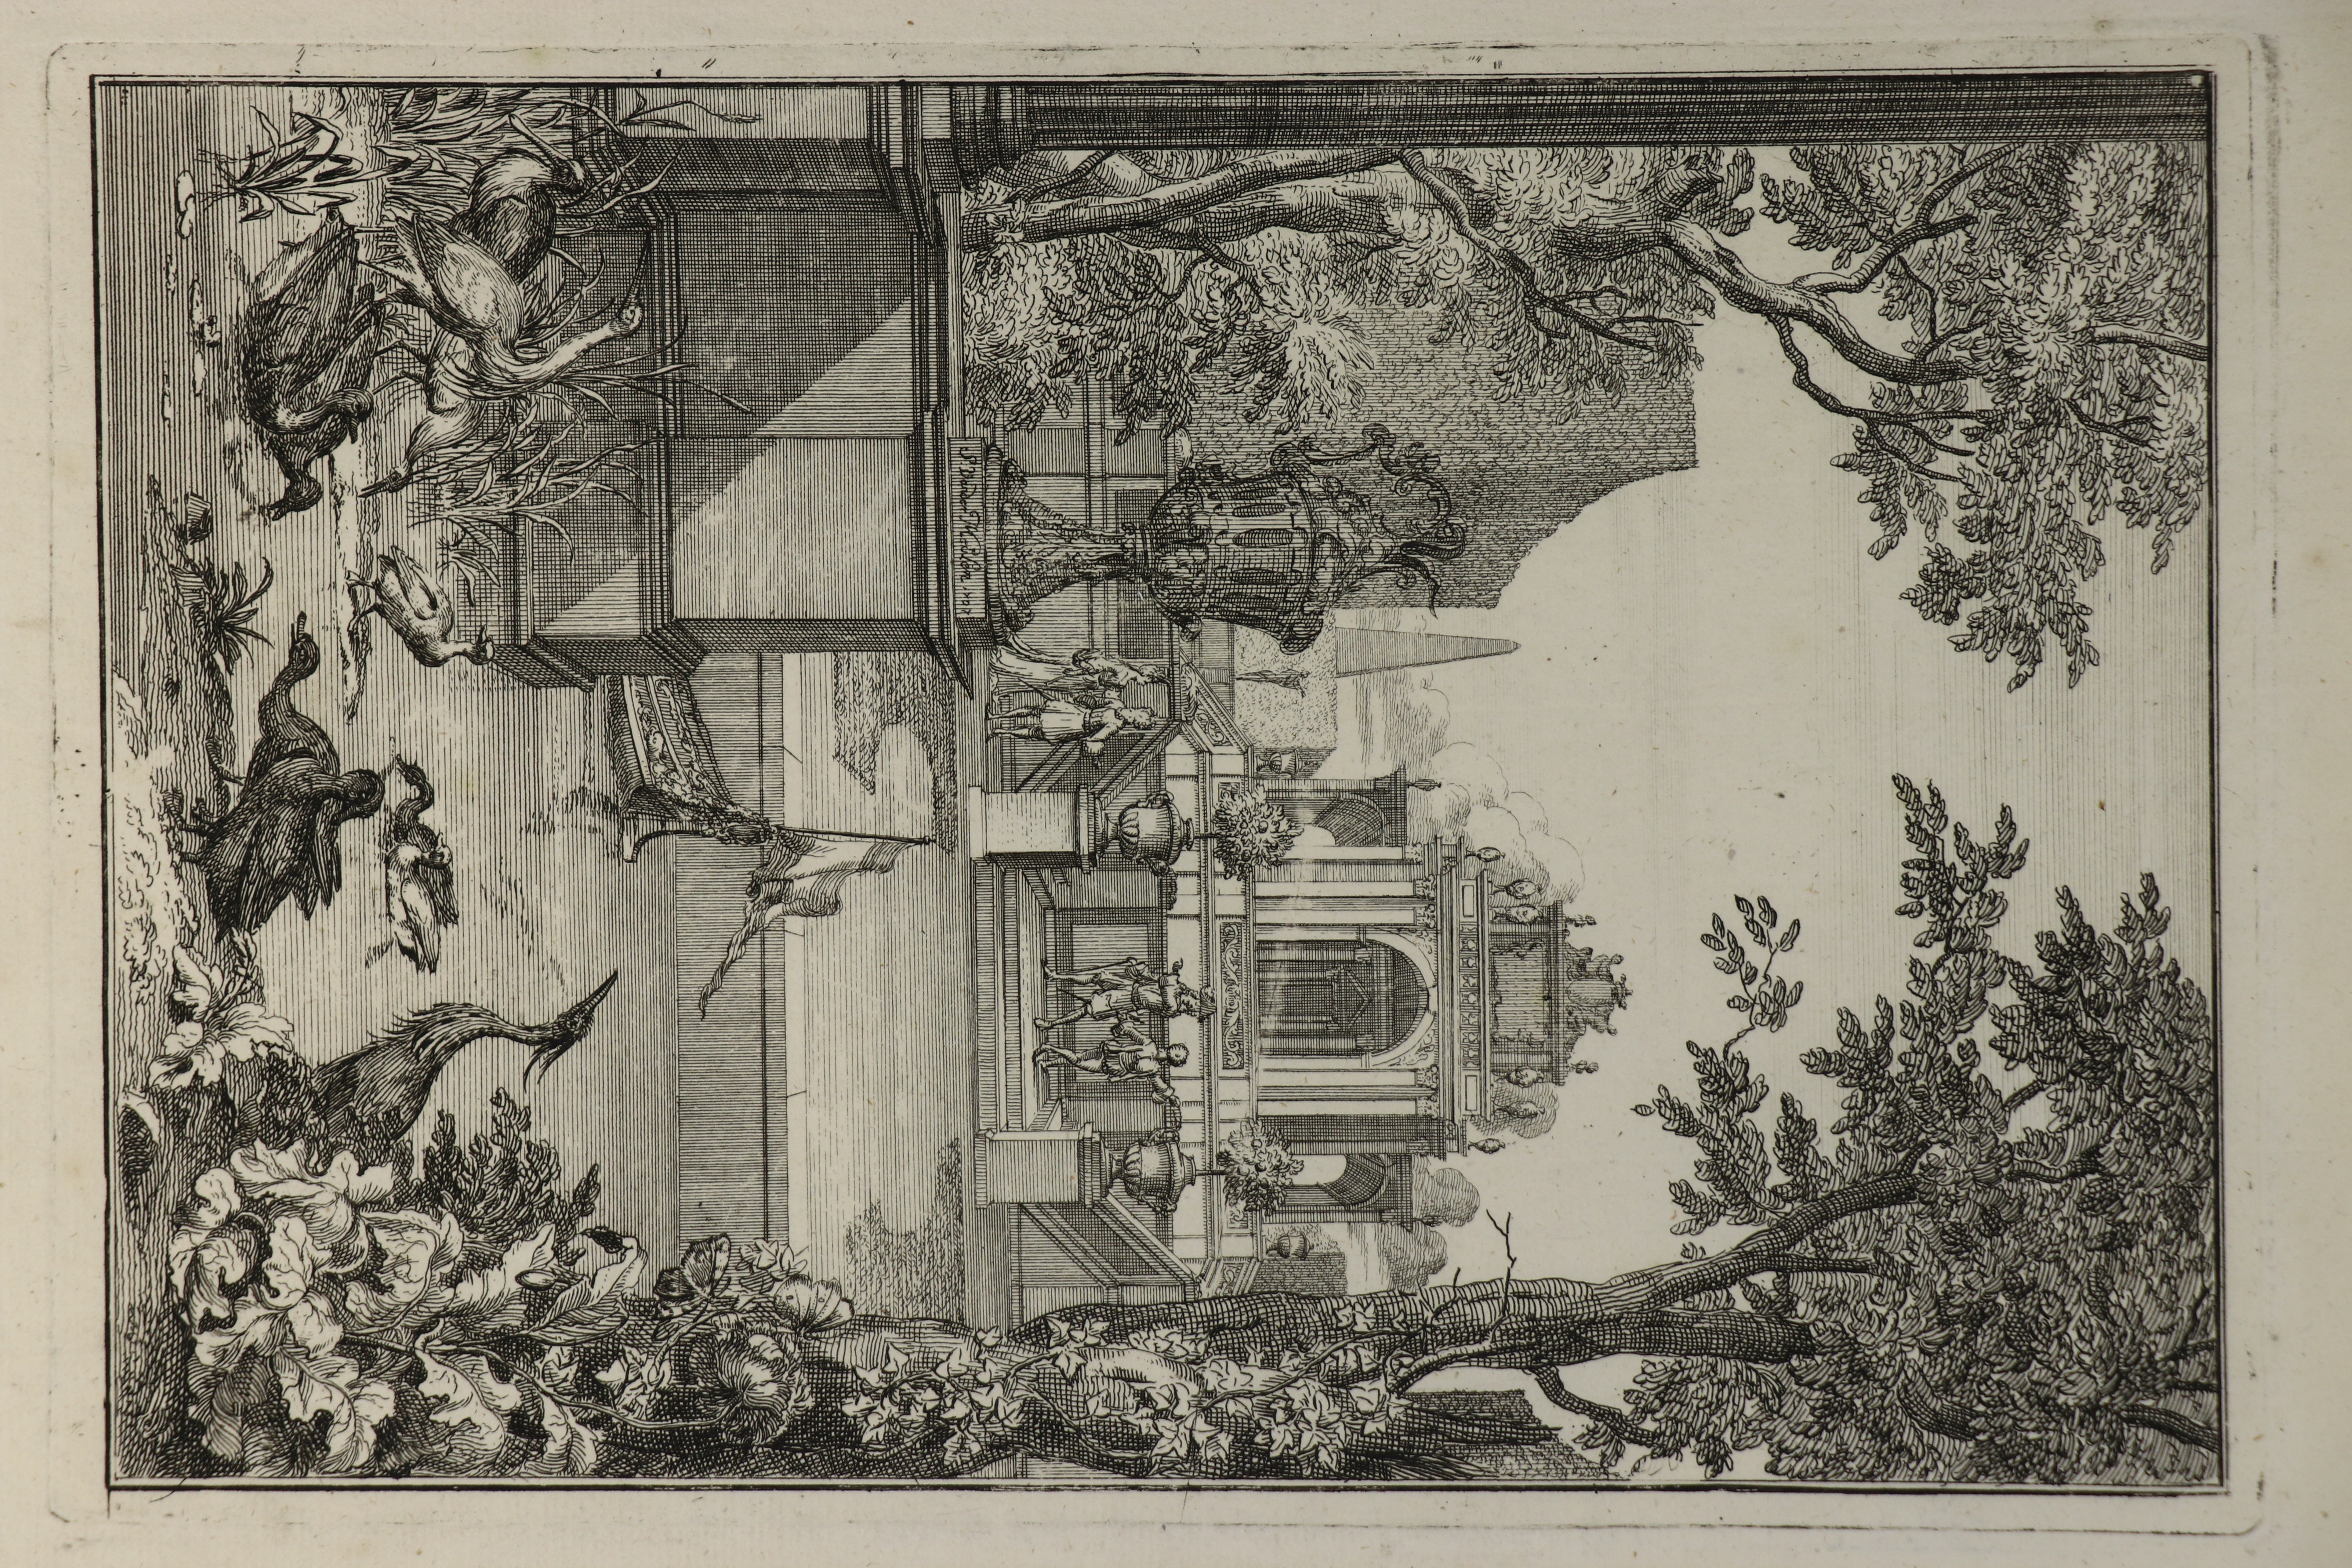 Elegante Gesellschaft im Garten, van der Meulen, 1707 (Städtisches Museum Schloss Rheydt CC BY)